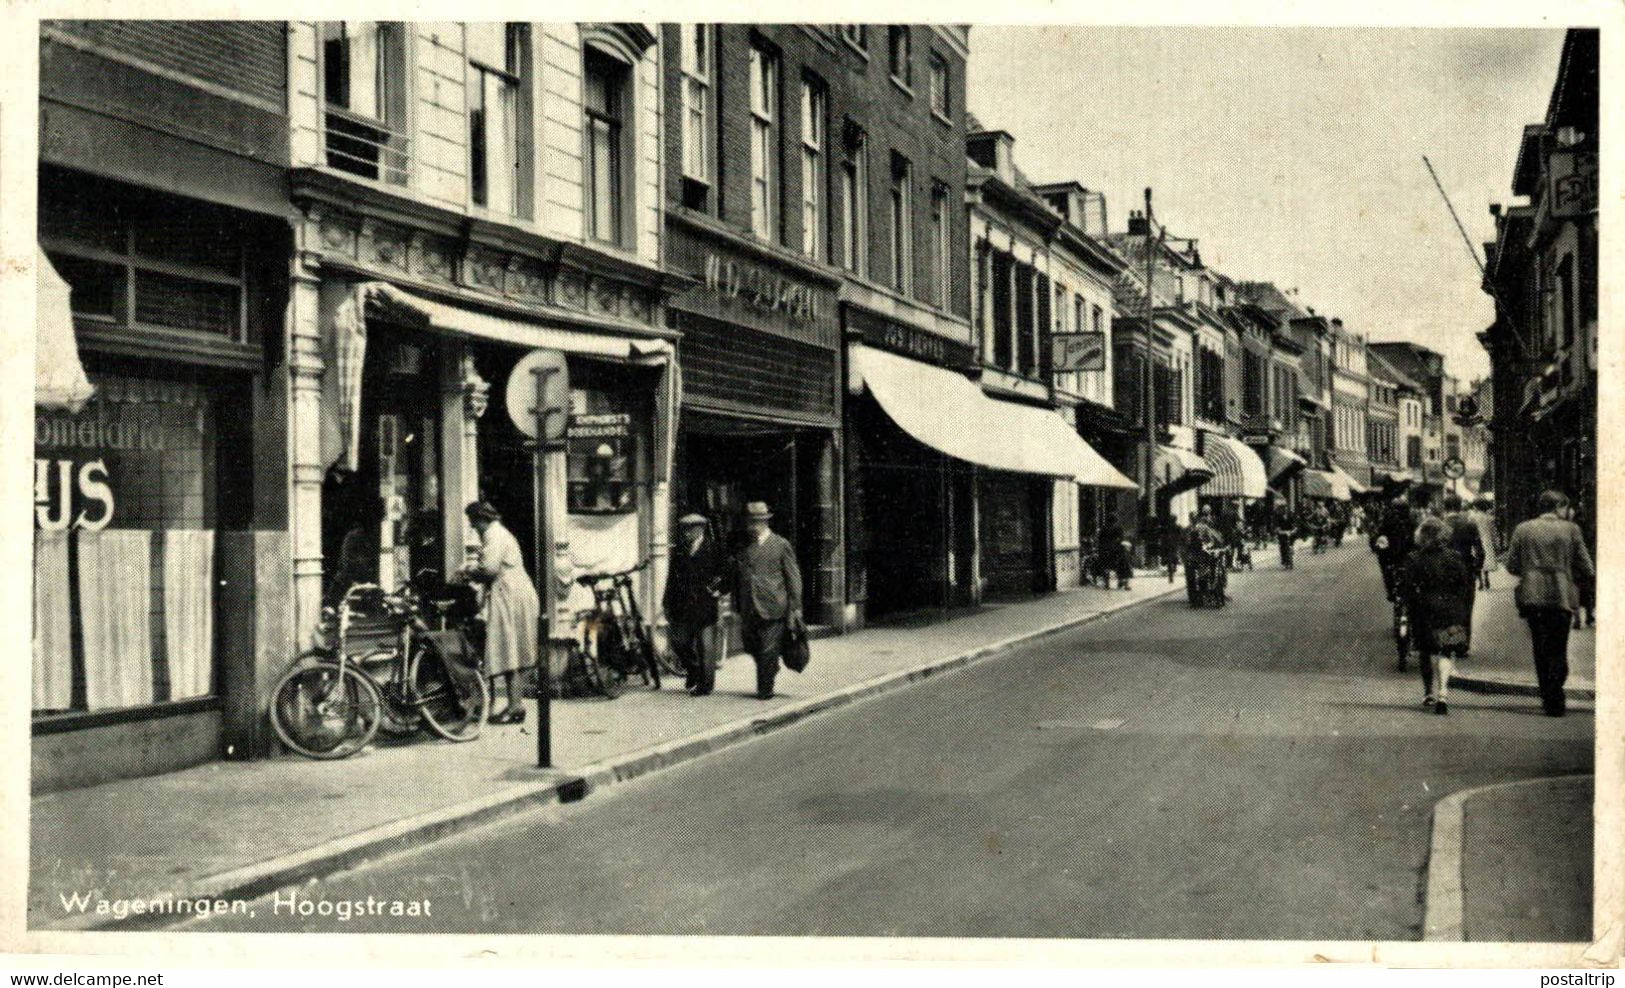 WAGENINGEN   Hoogstraat  Winkelstraat 1953 Mensen Lopen Fiets Street Gelderland Wageningen  HOLLAND HOLANDA NETHERLANDS - Wageningen